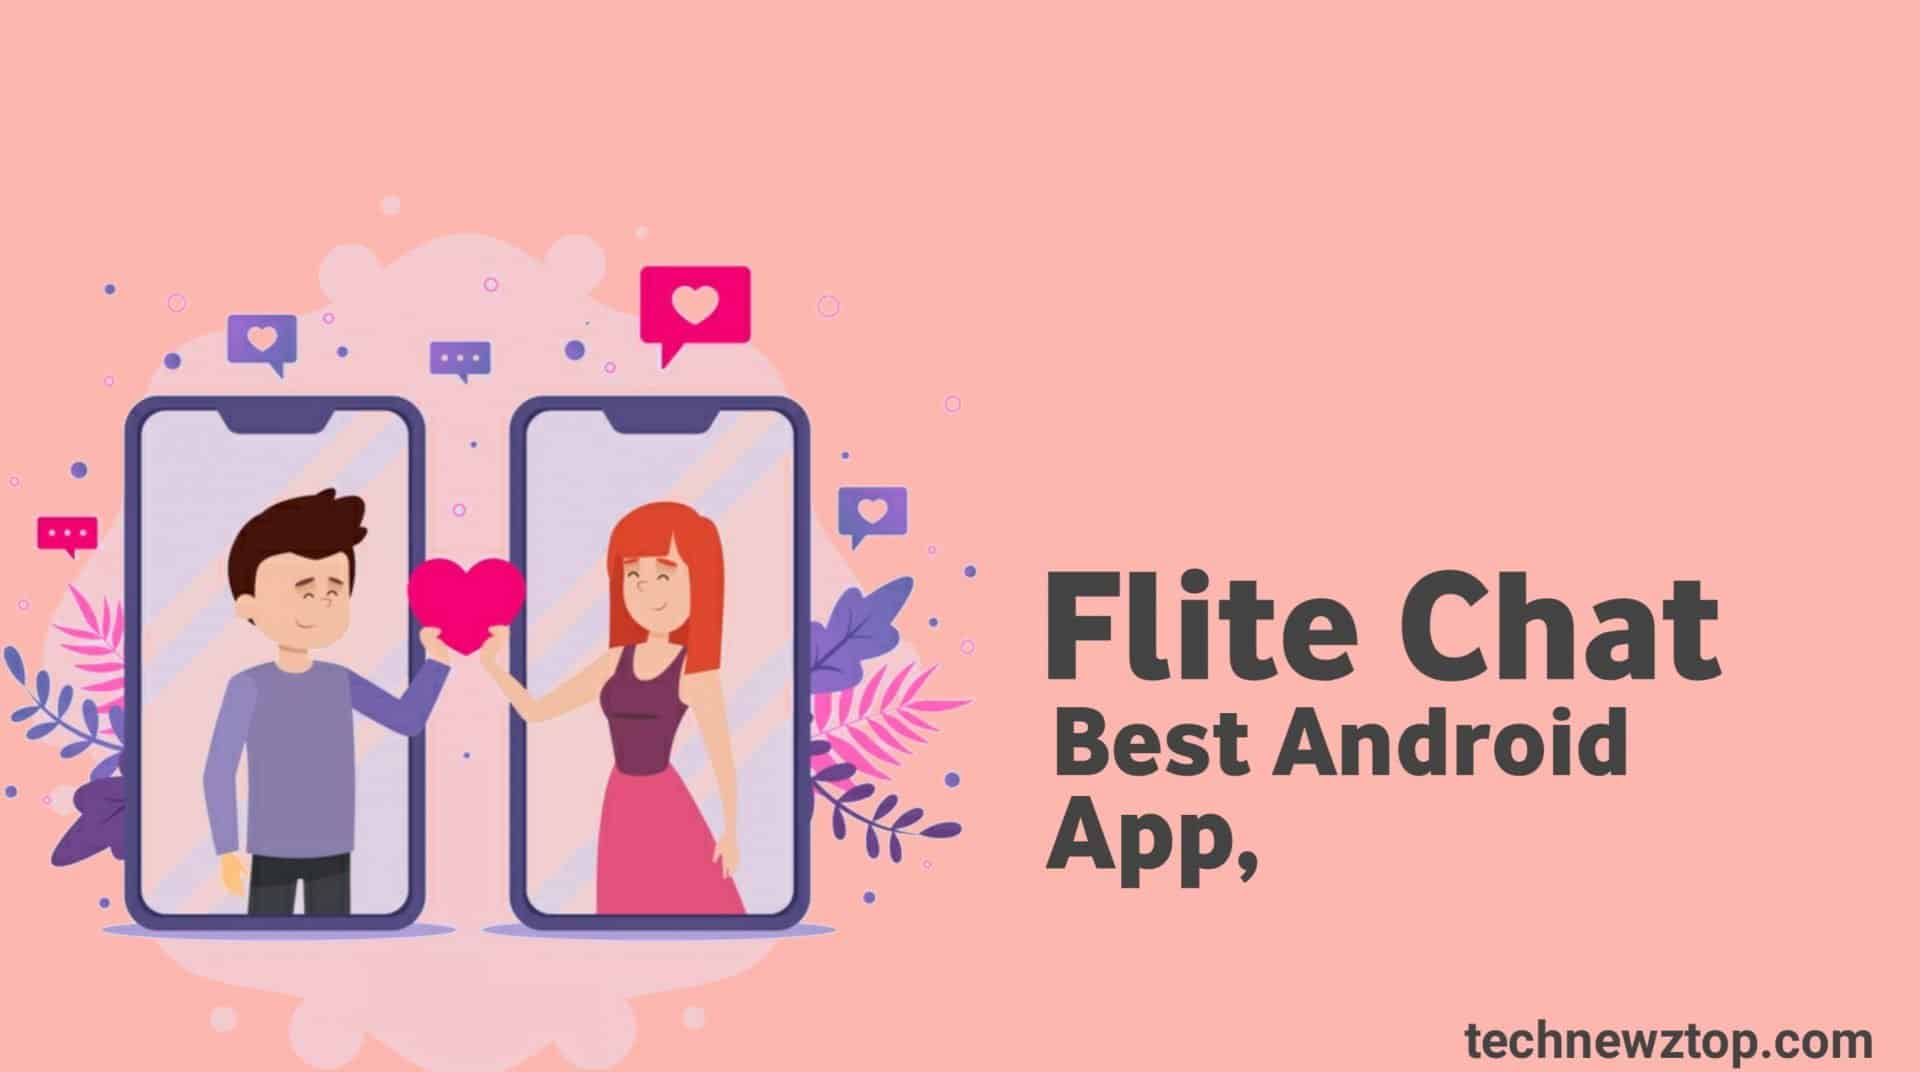 Kostenlose flirt app für android